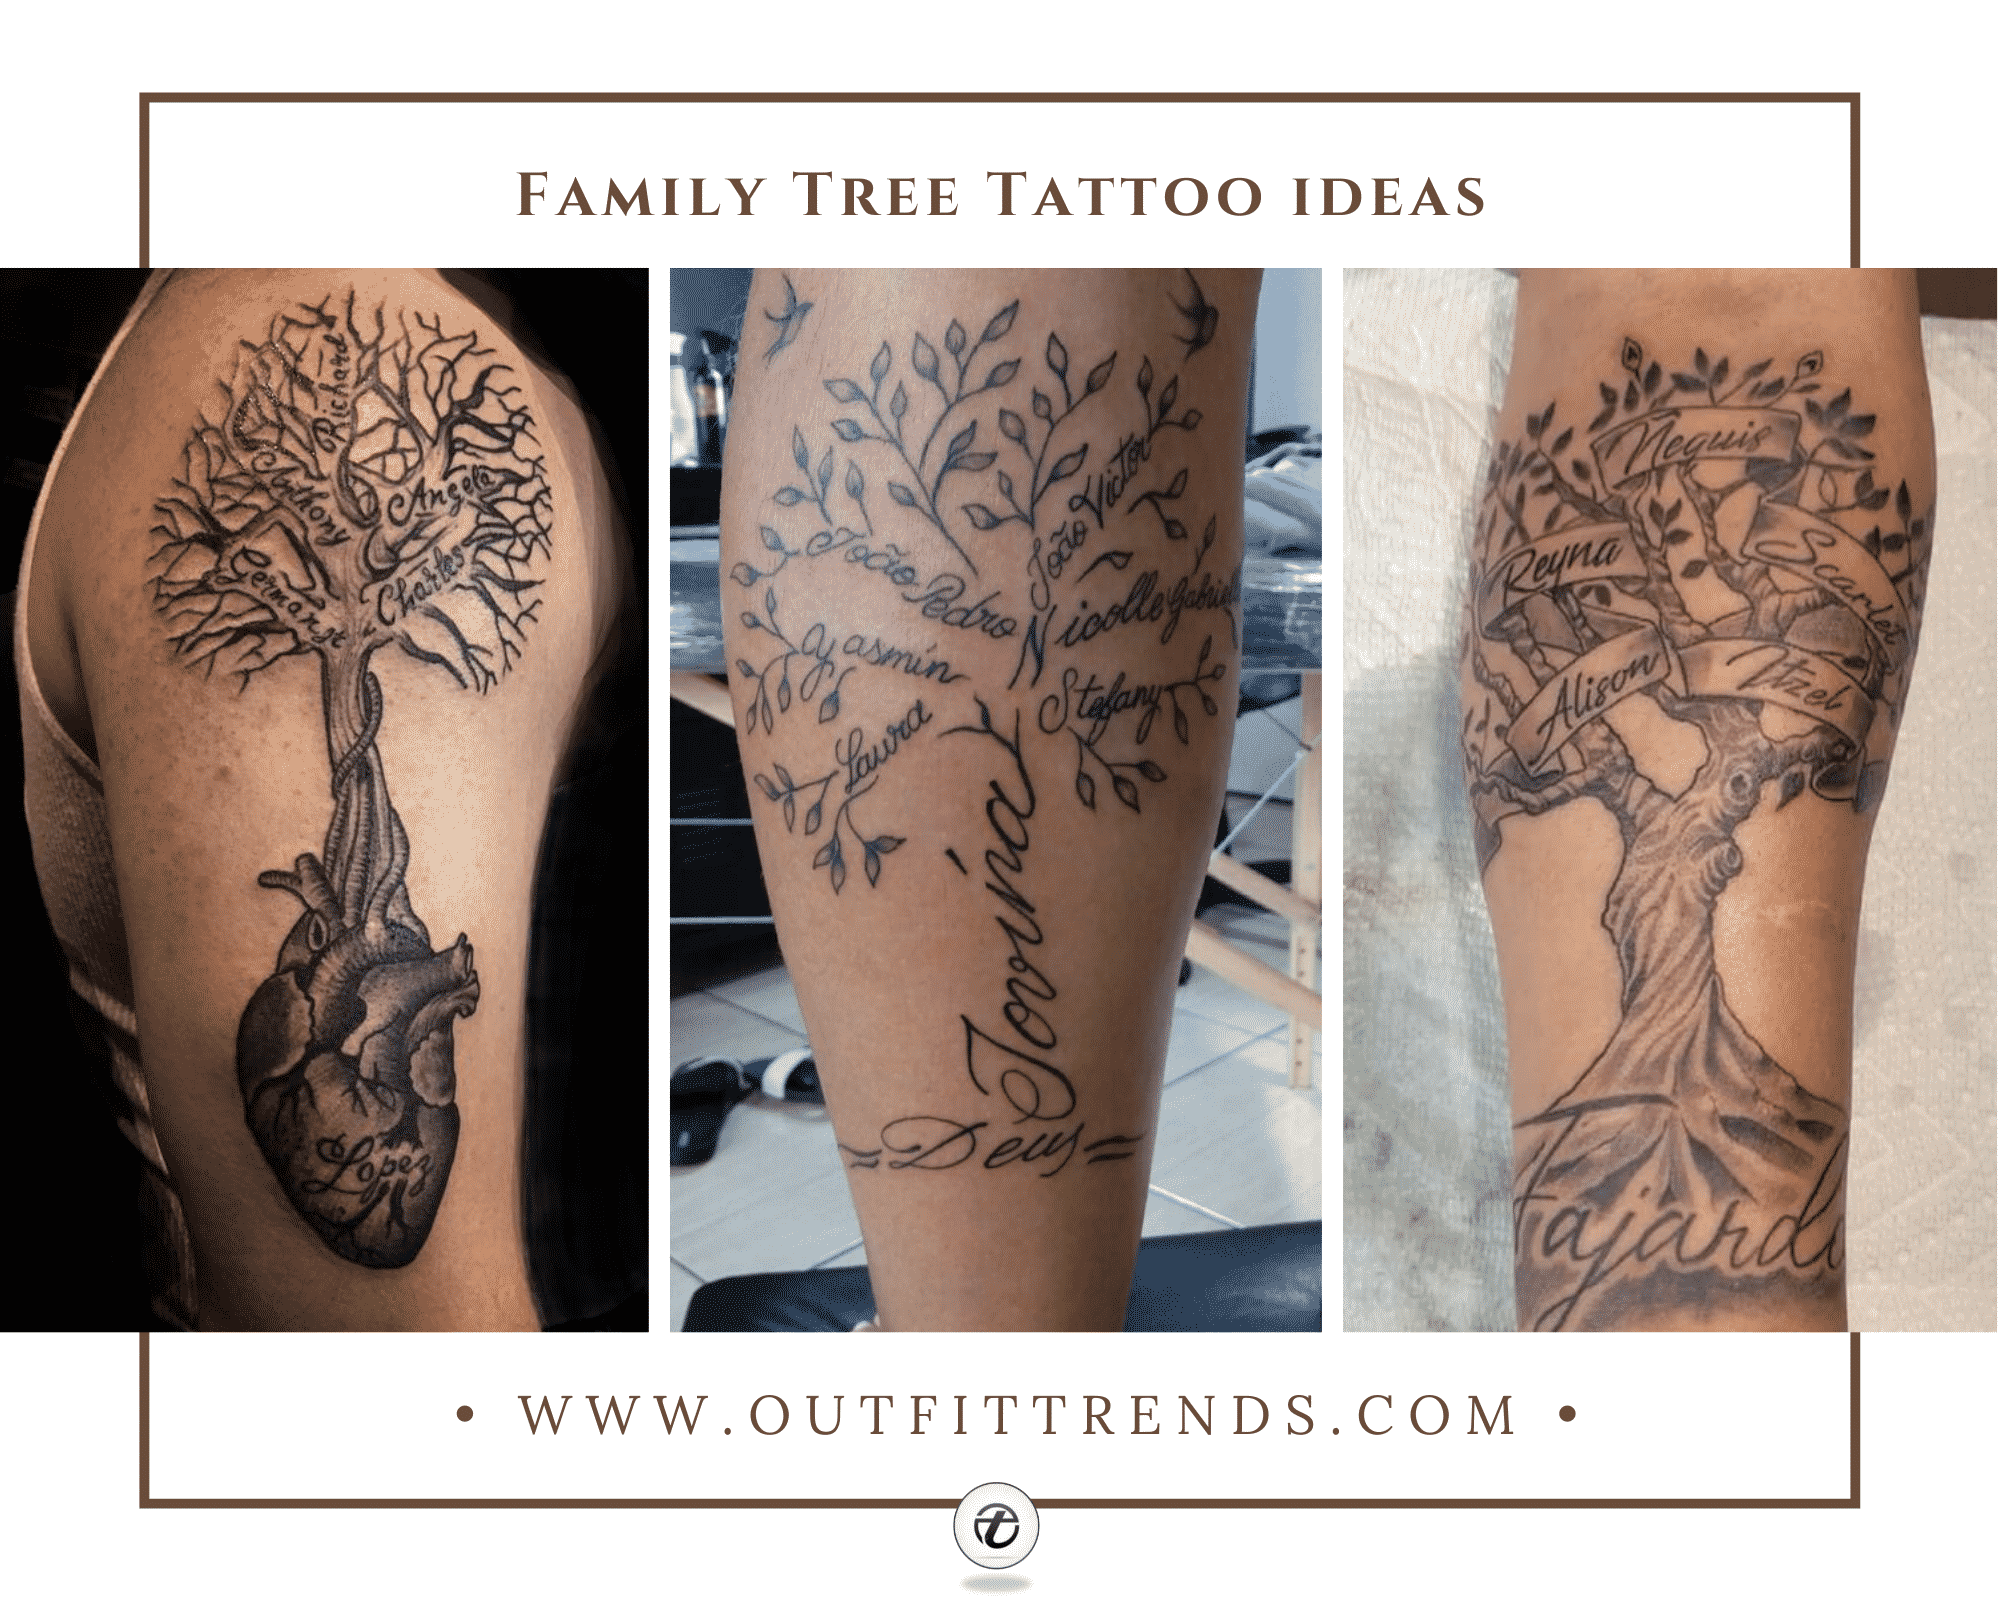 Aggregate 80 family tree tattoo ideas super hot  thtantai2